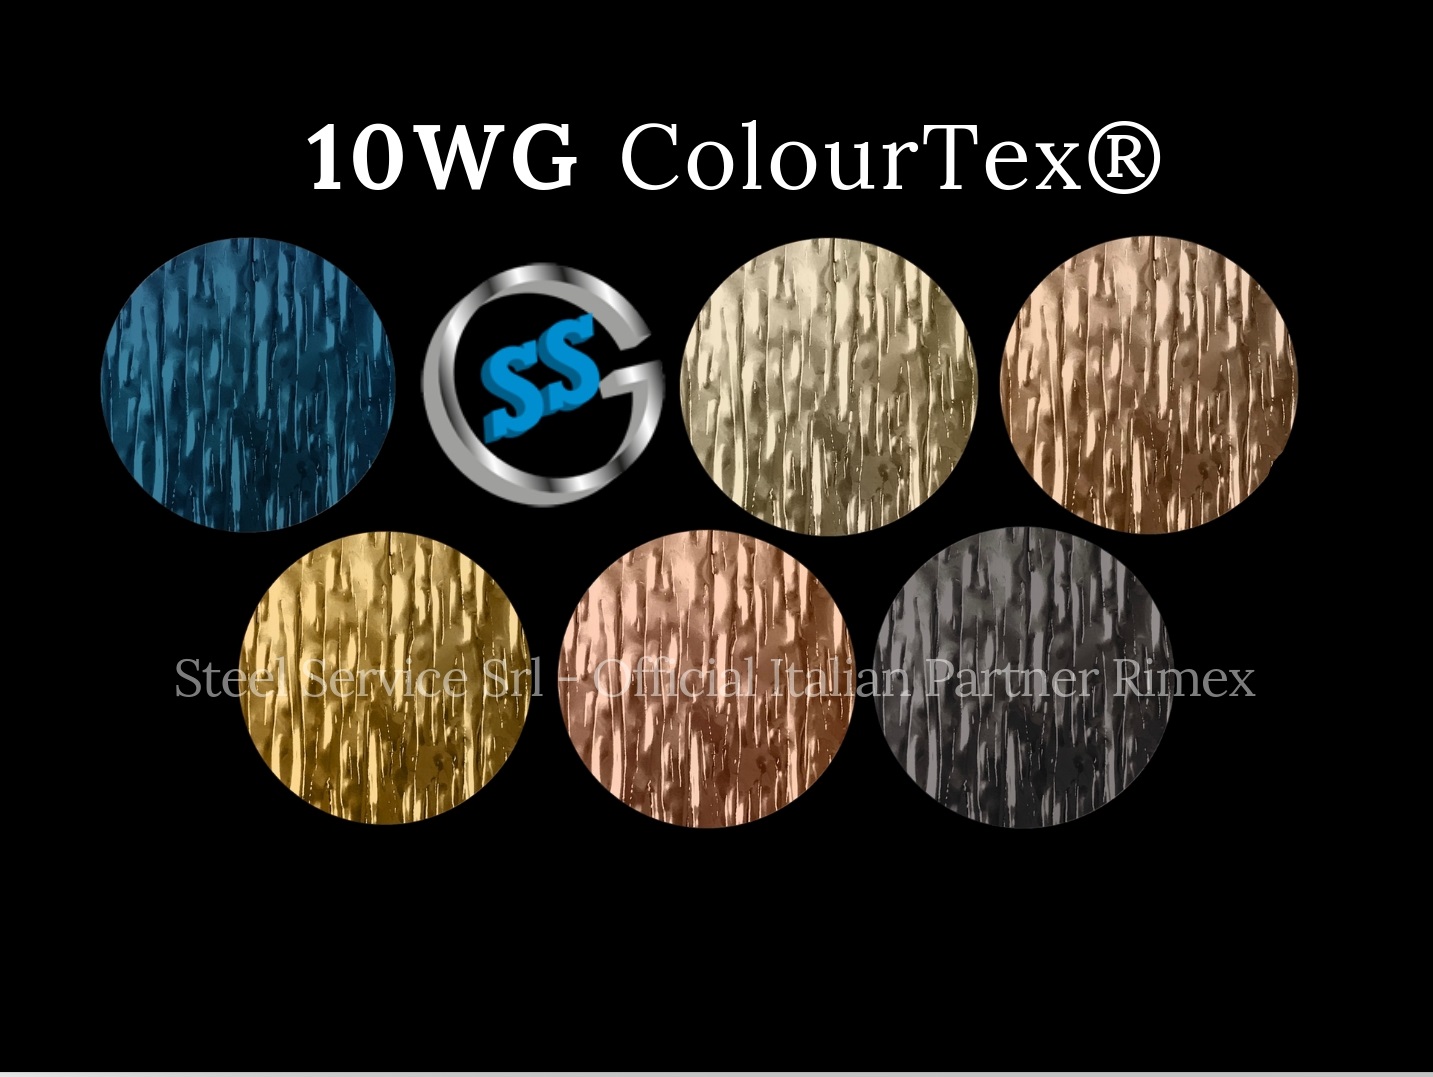 Lamiere bugnate 10WG colorate, Palette varianti elettro-colorate inox ColourTex delle lamiere inox 10WG, inox rigidizzato galvanico 10WG, inox legno elettro-colorato